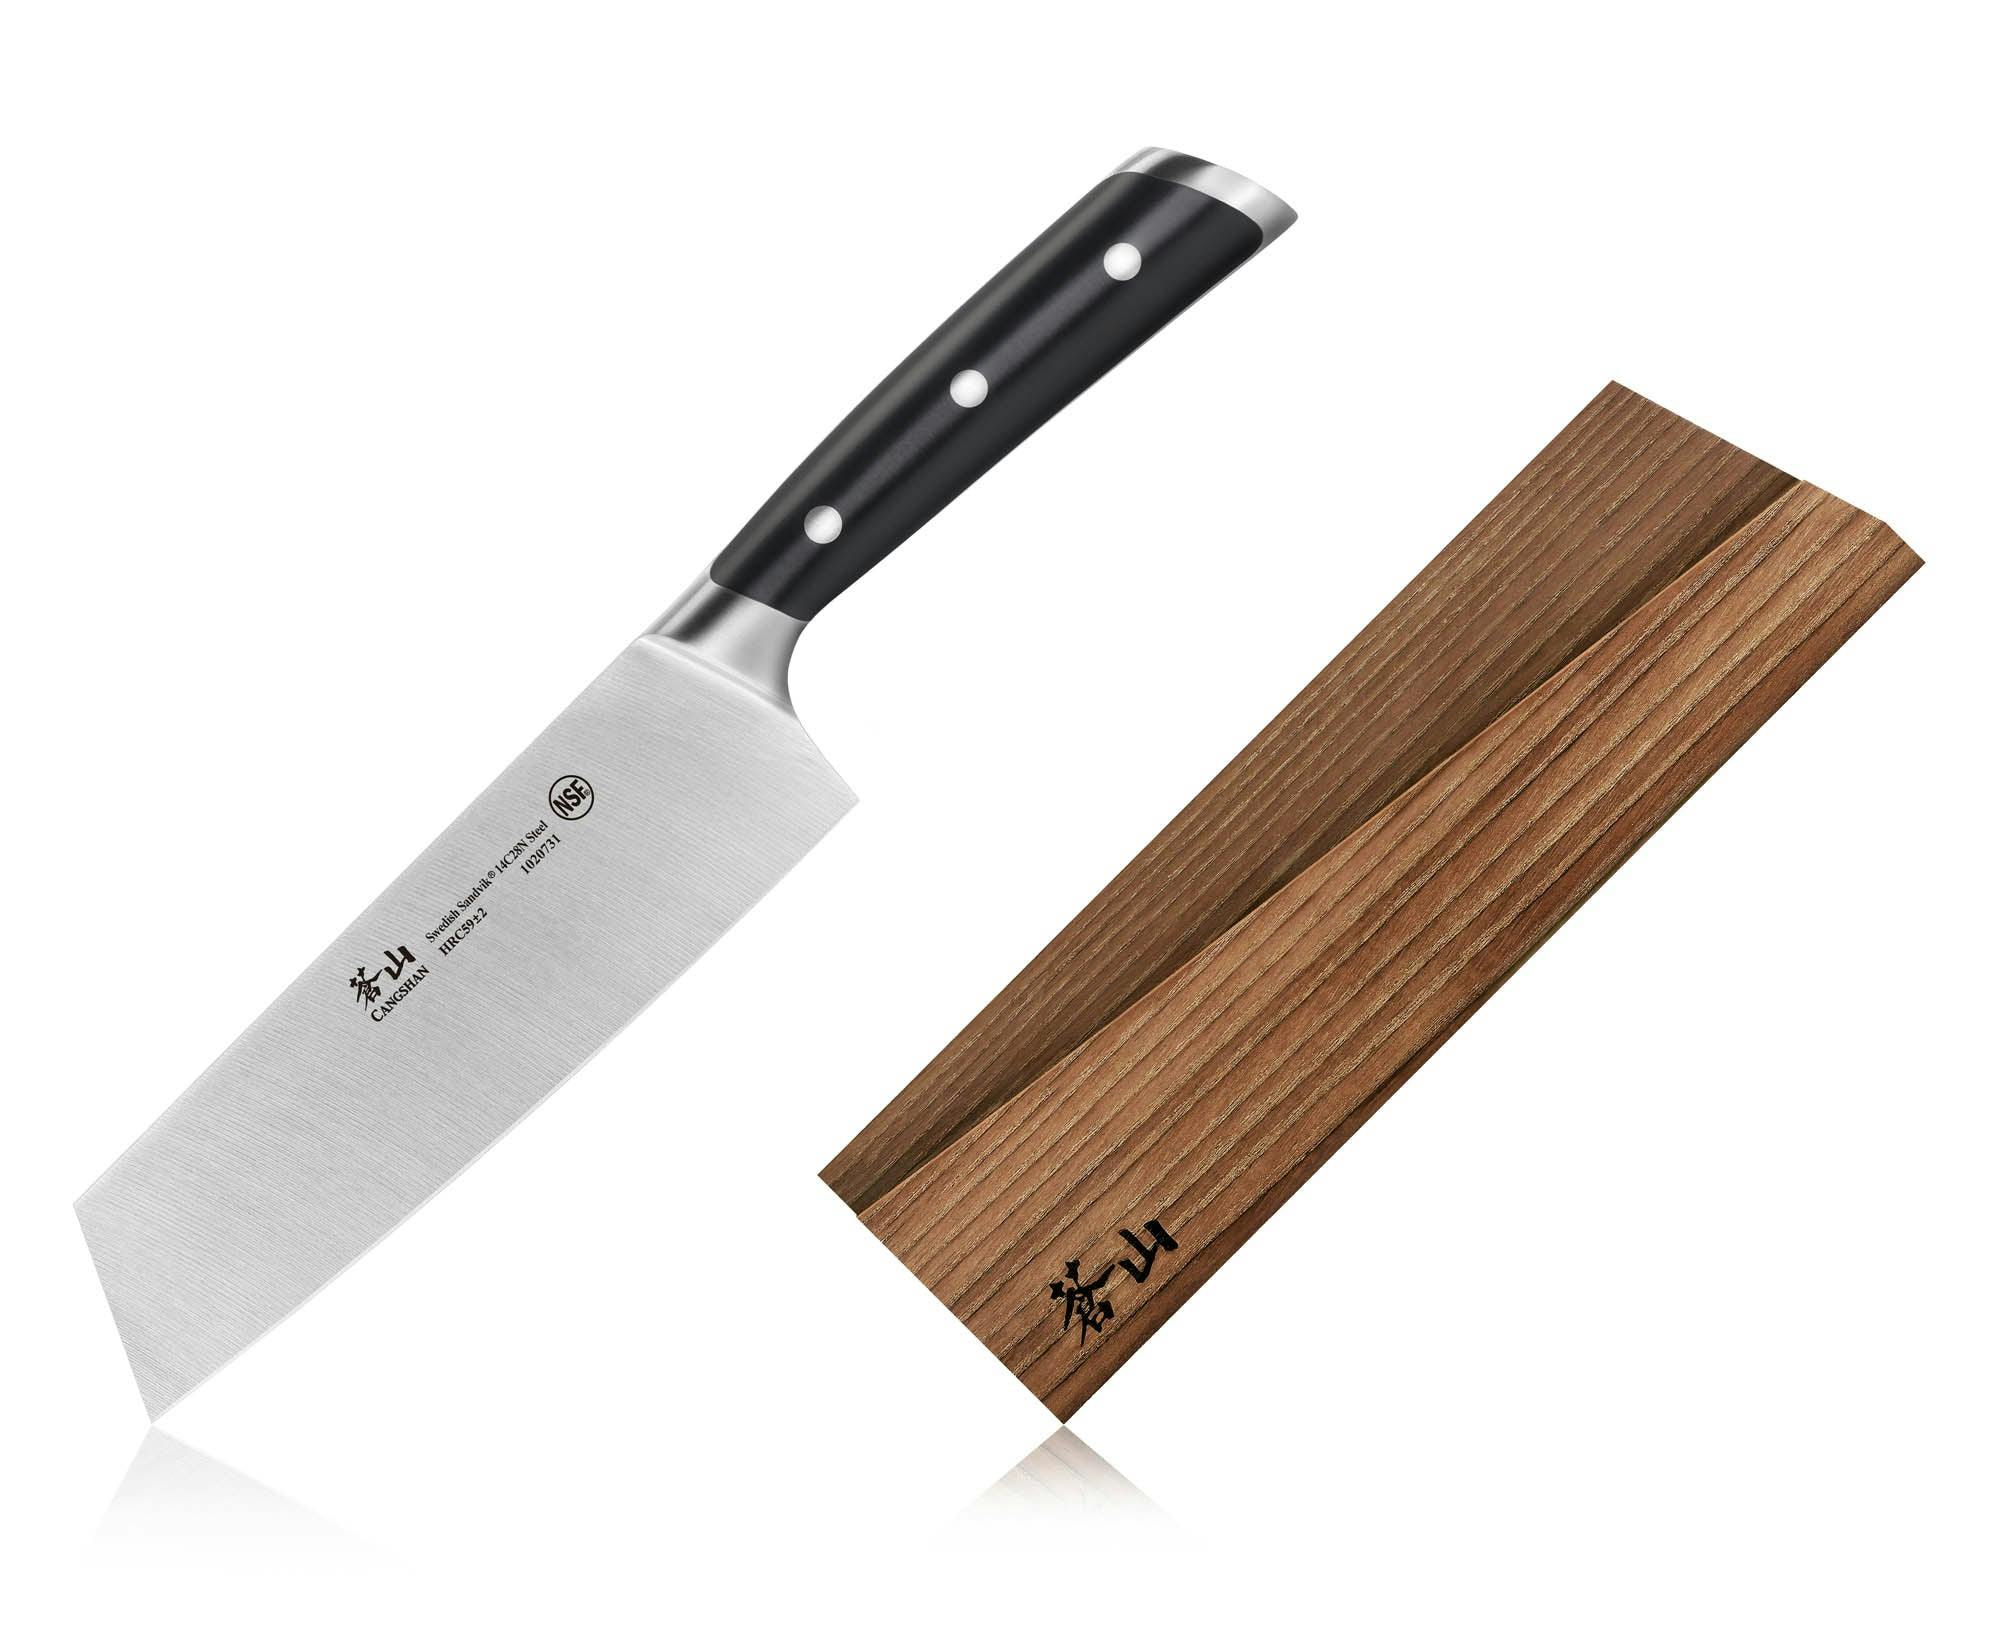 Cangshan TS Series 7" Nakiri Knife and Wood Sheath Set